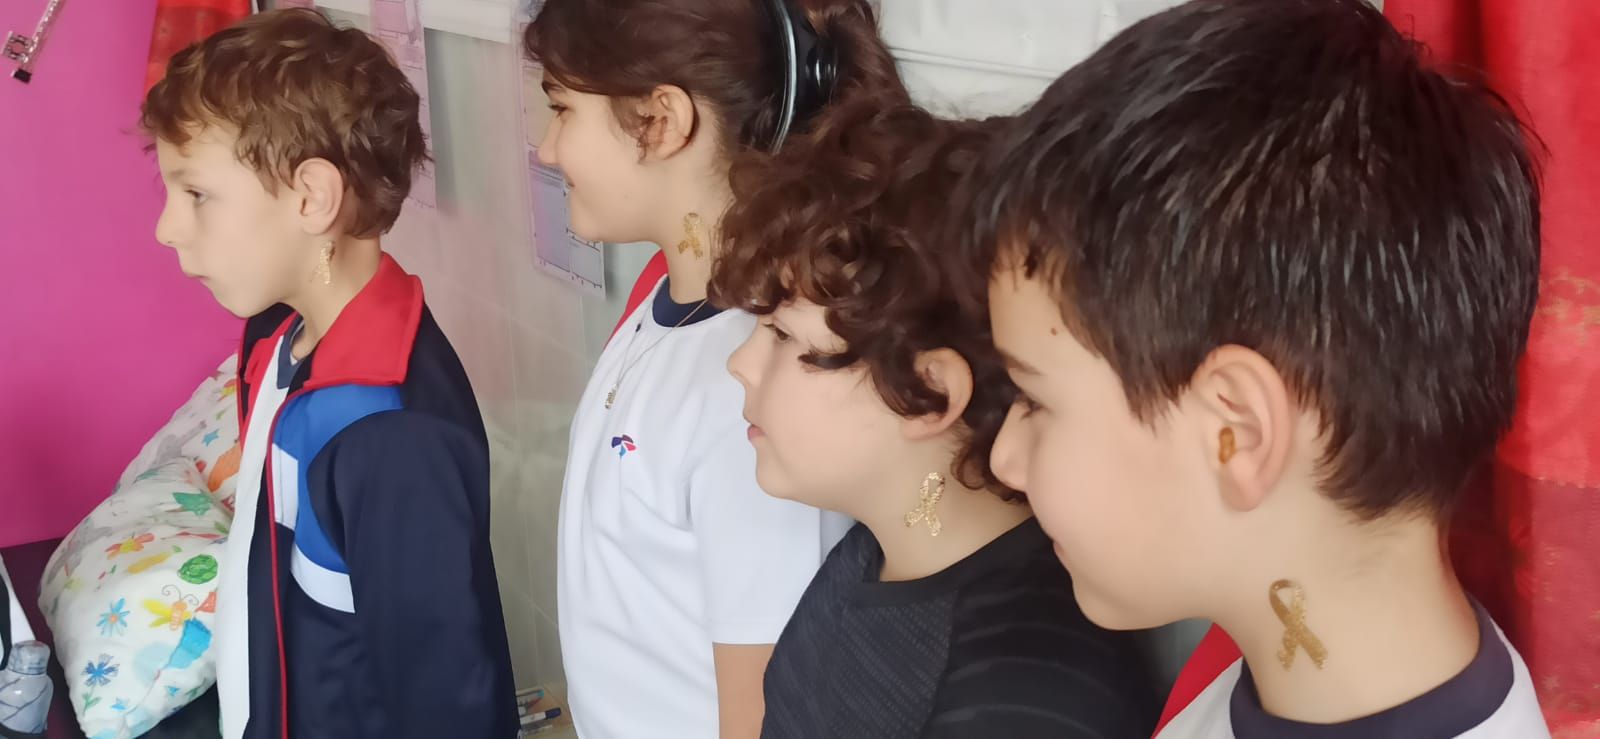 El colegio La Vega de Benavente manda su "fuerza" a los niños que luchan contra el cáncer